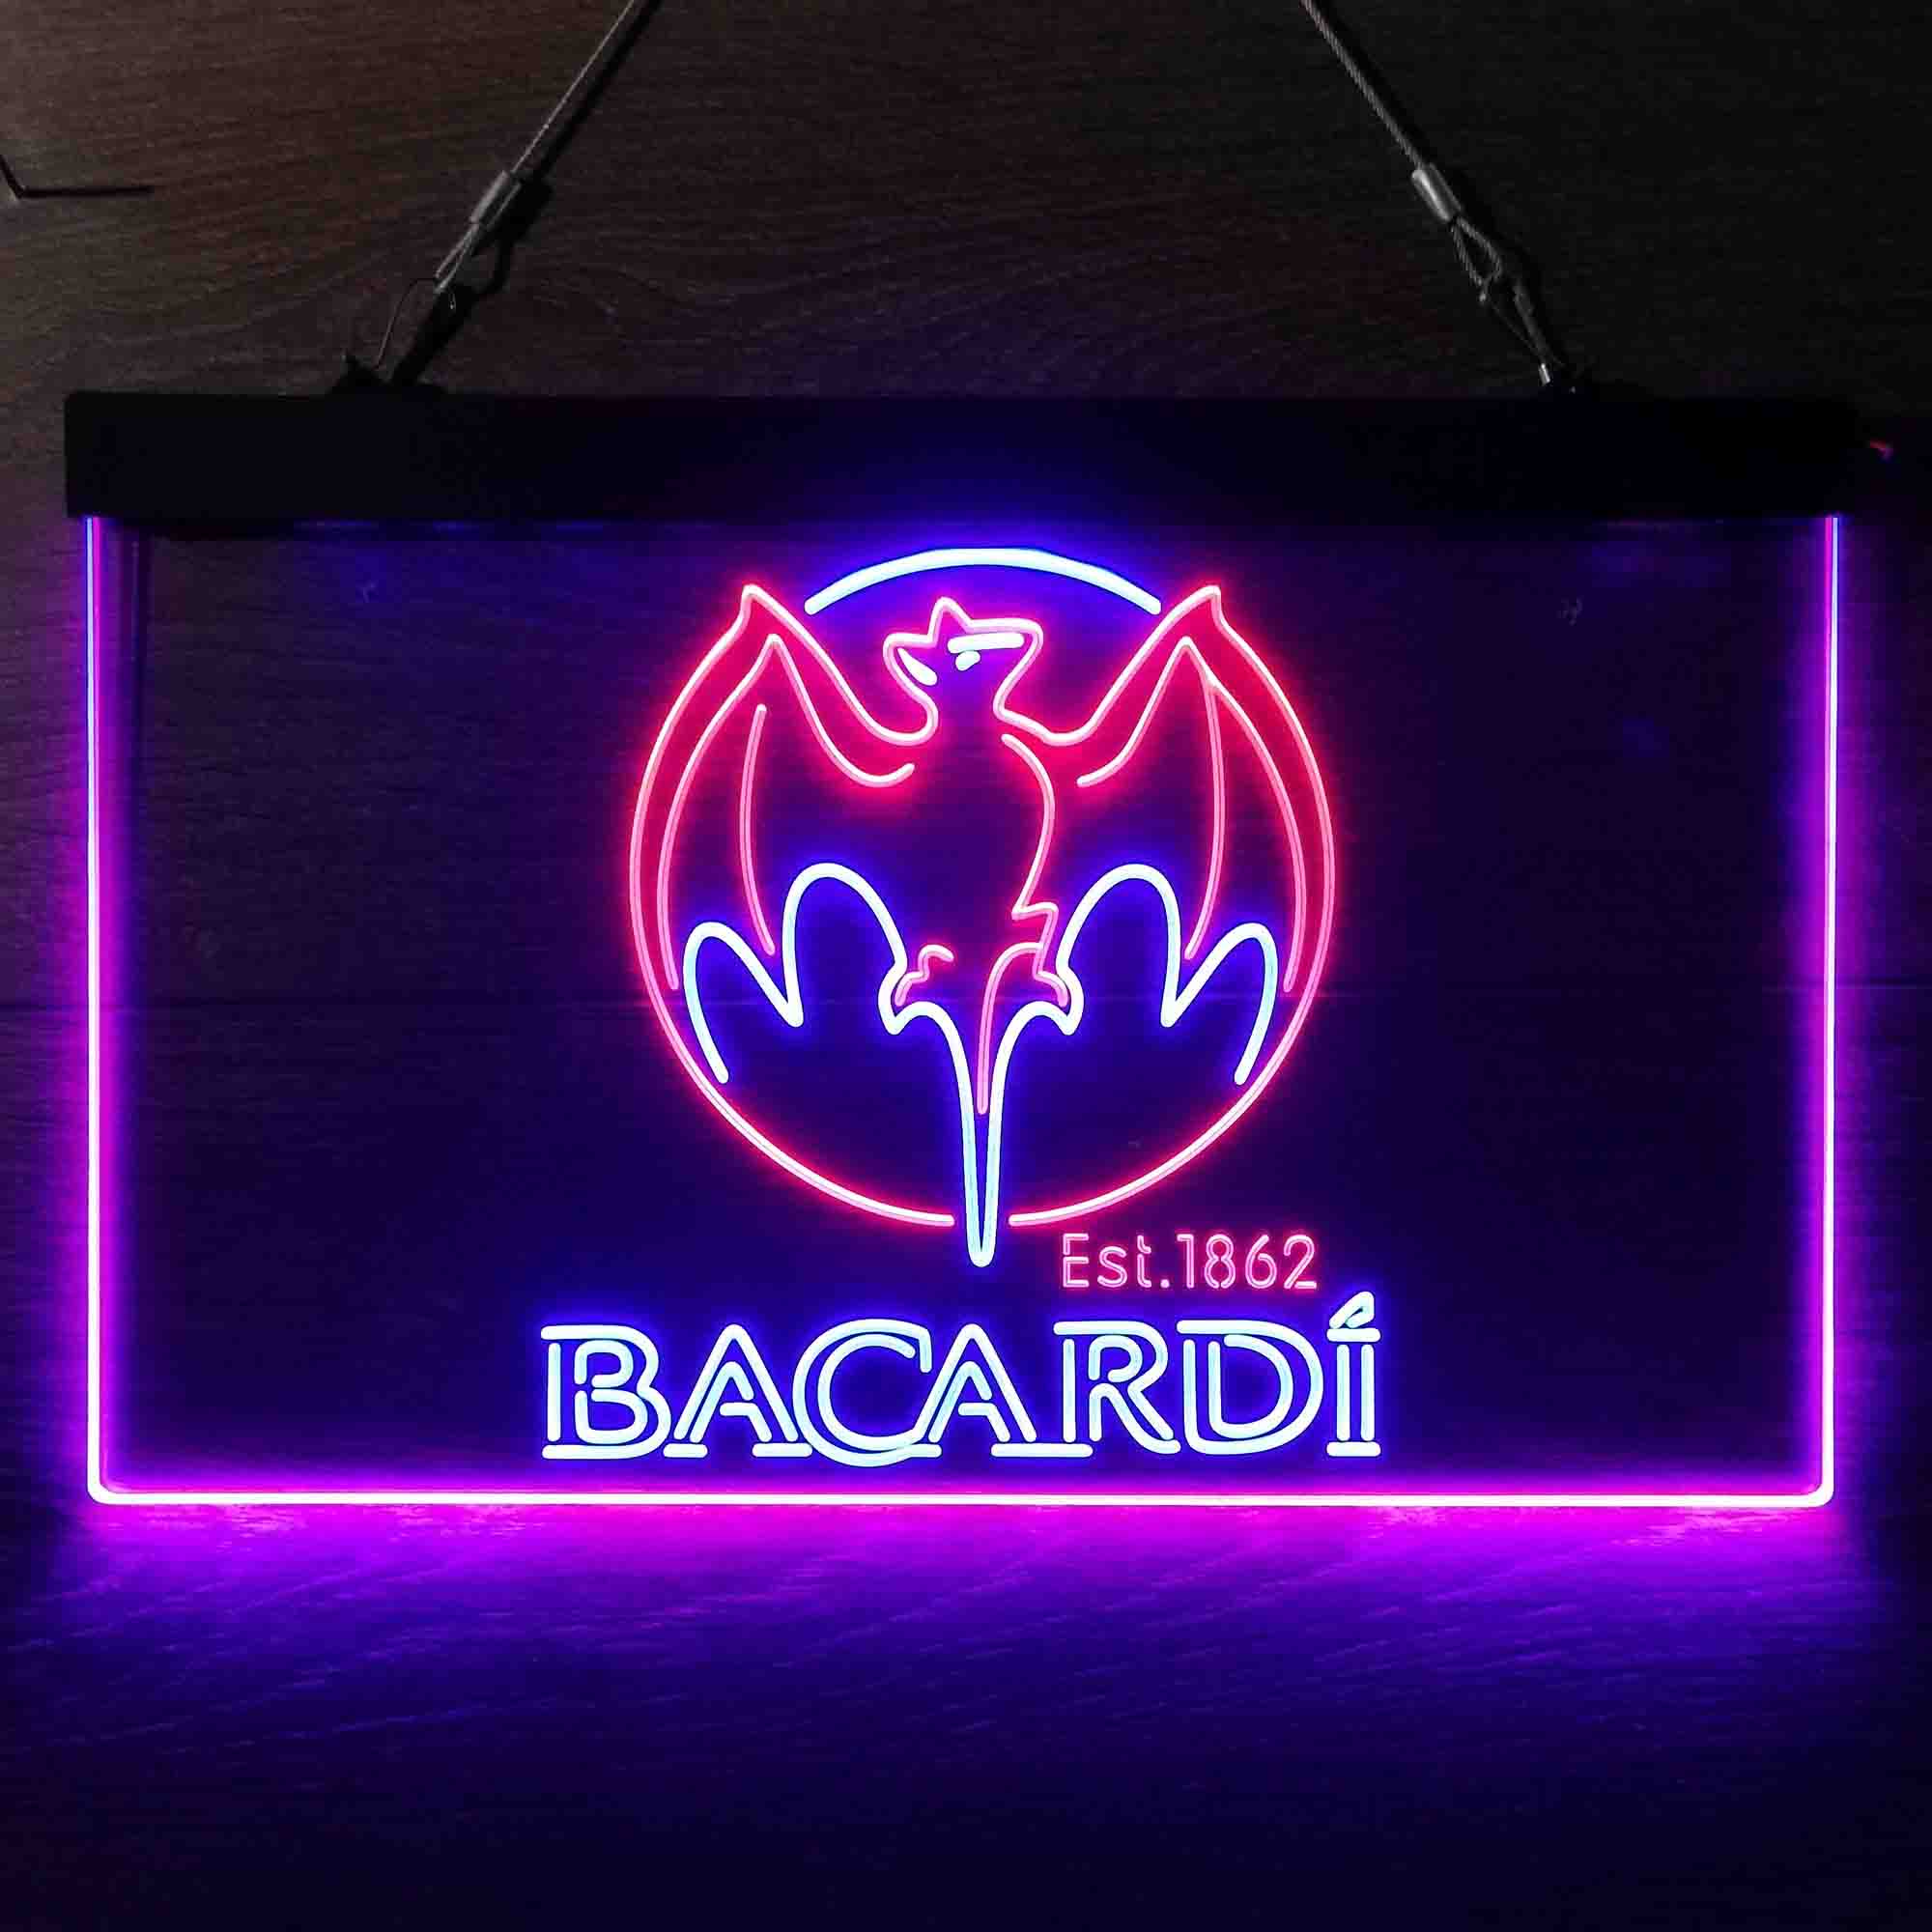 Bacardi Bat Est. 1862 LED Neon Sign